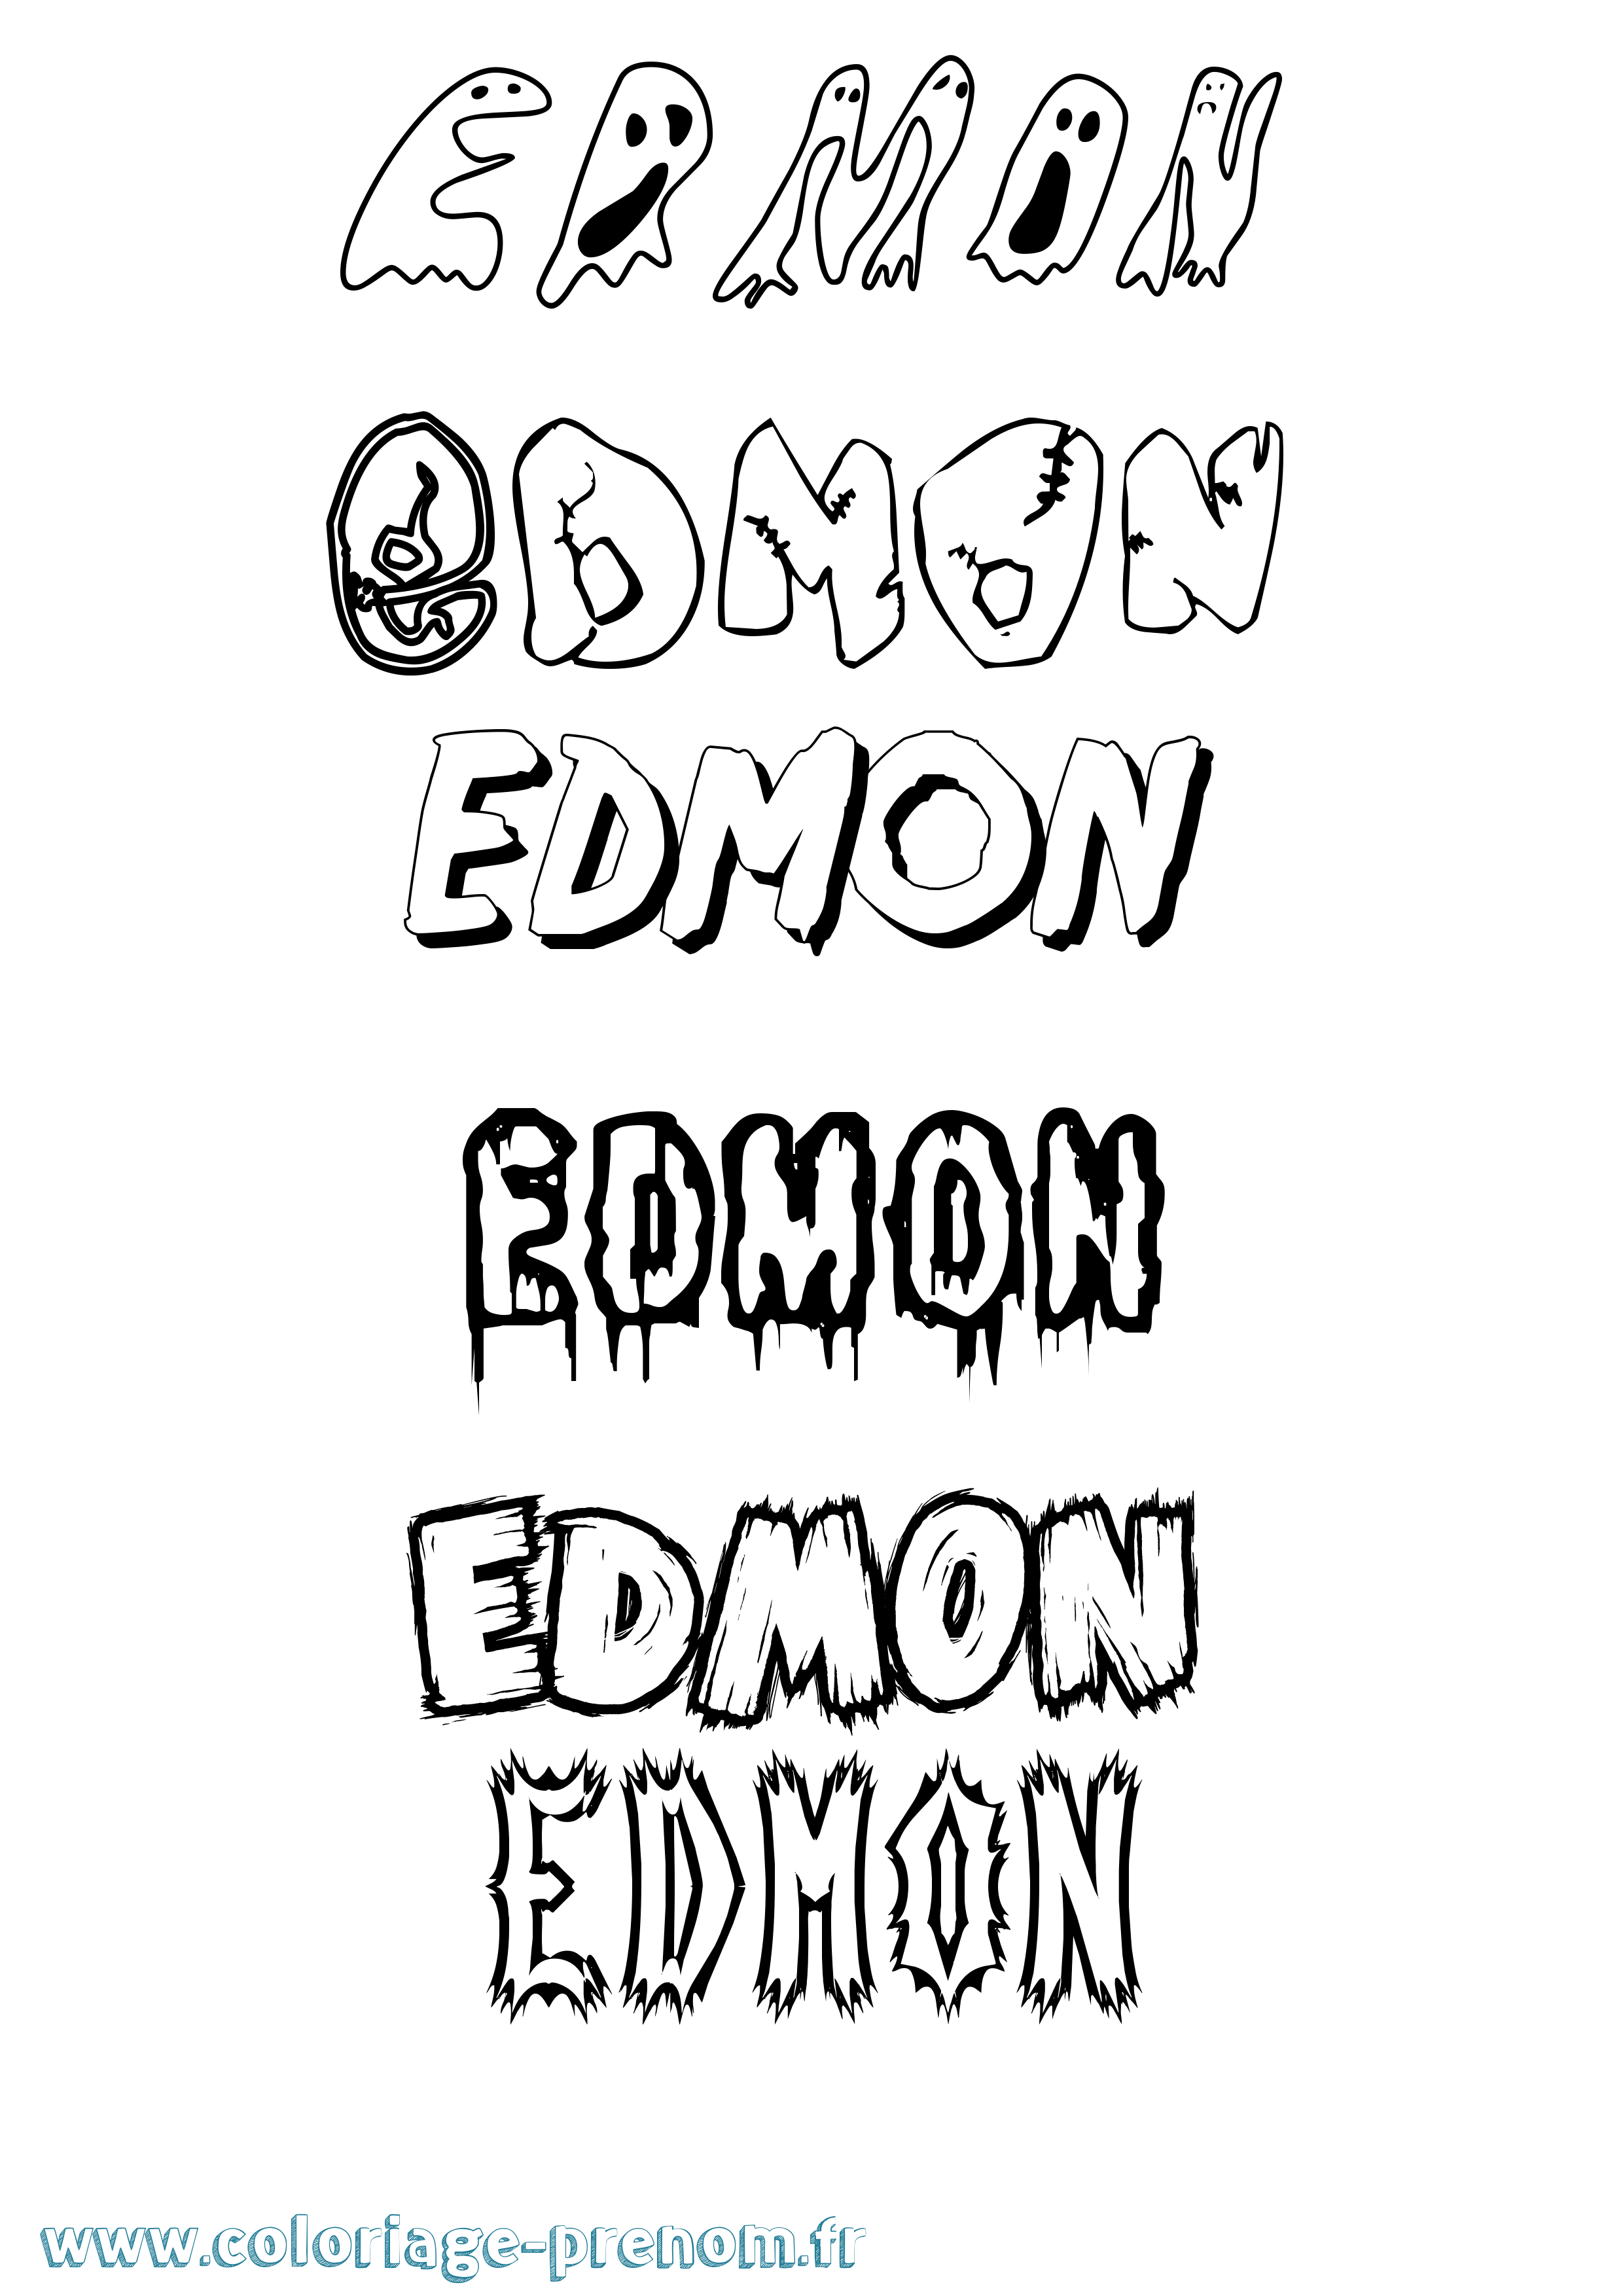 Coloriage prénom Edmon Frisson